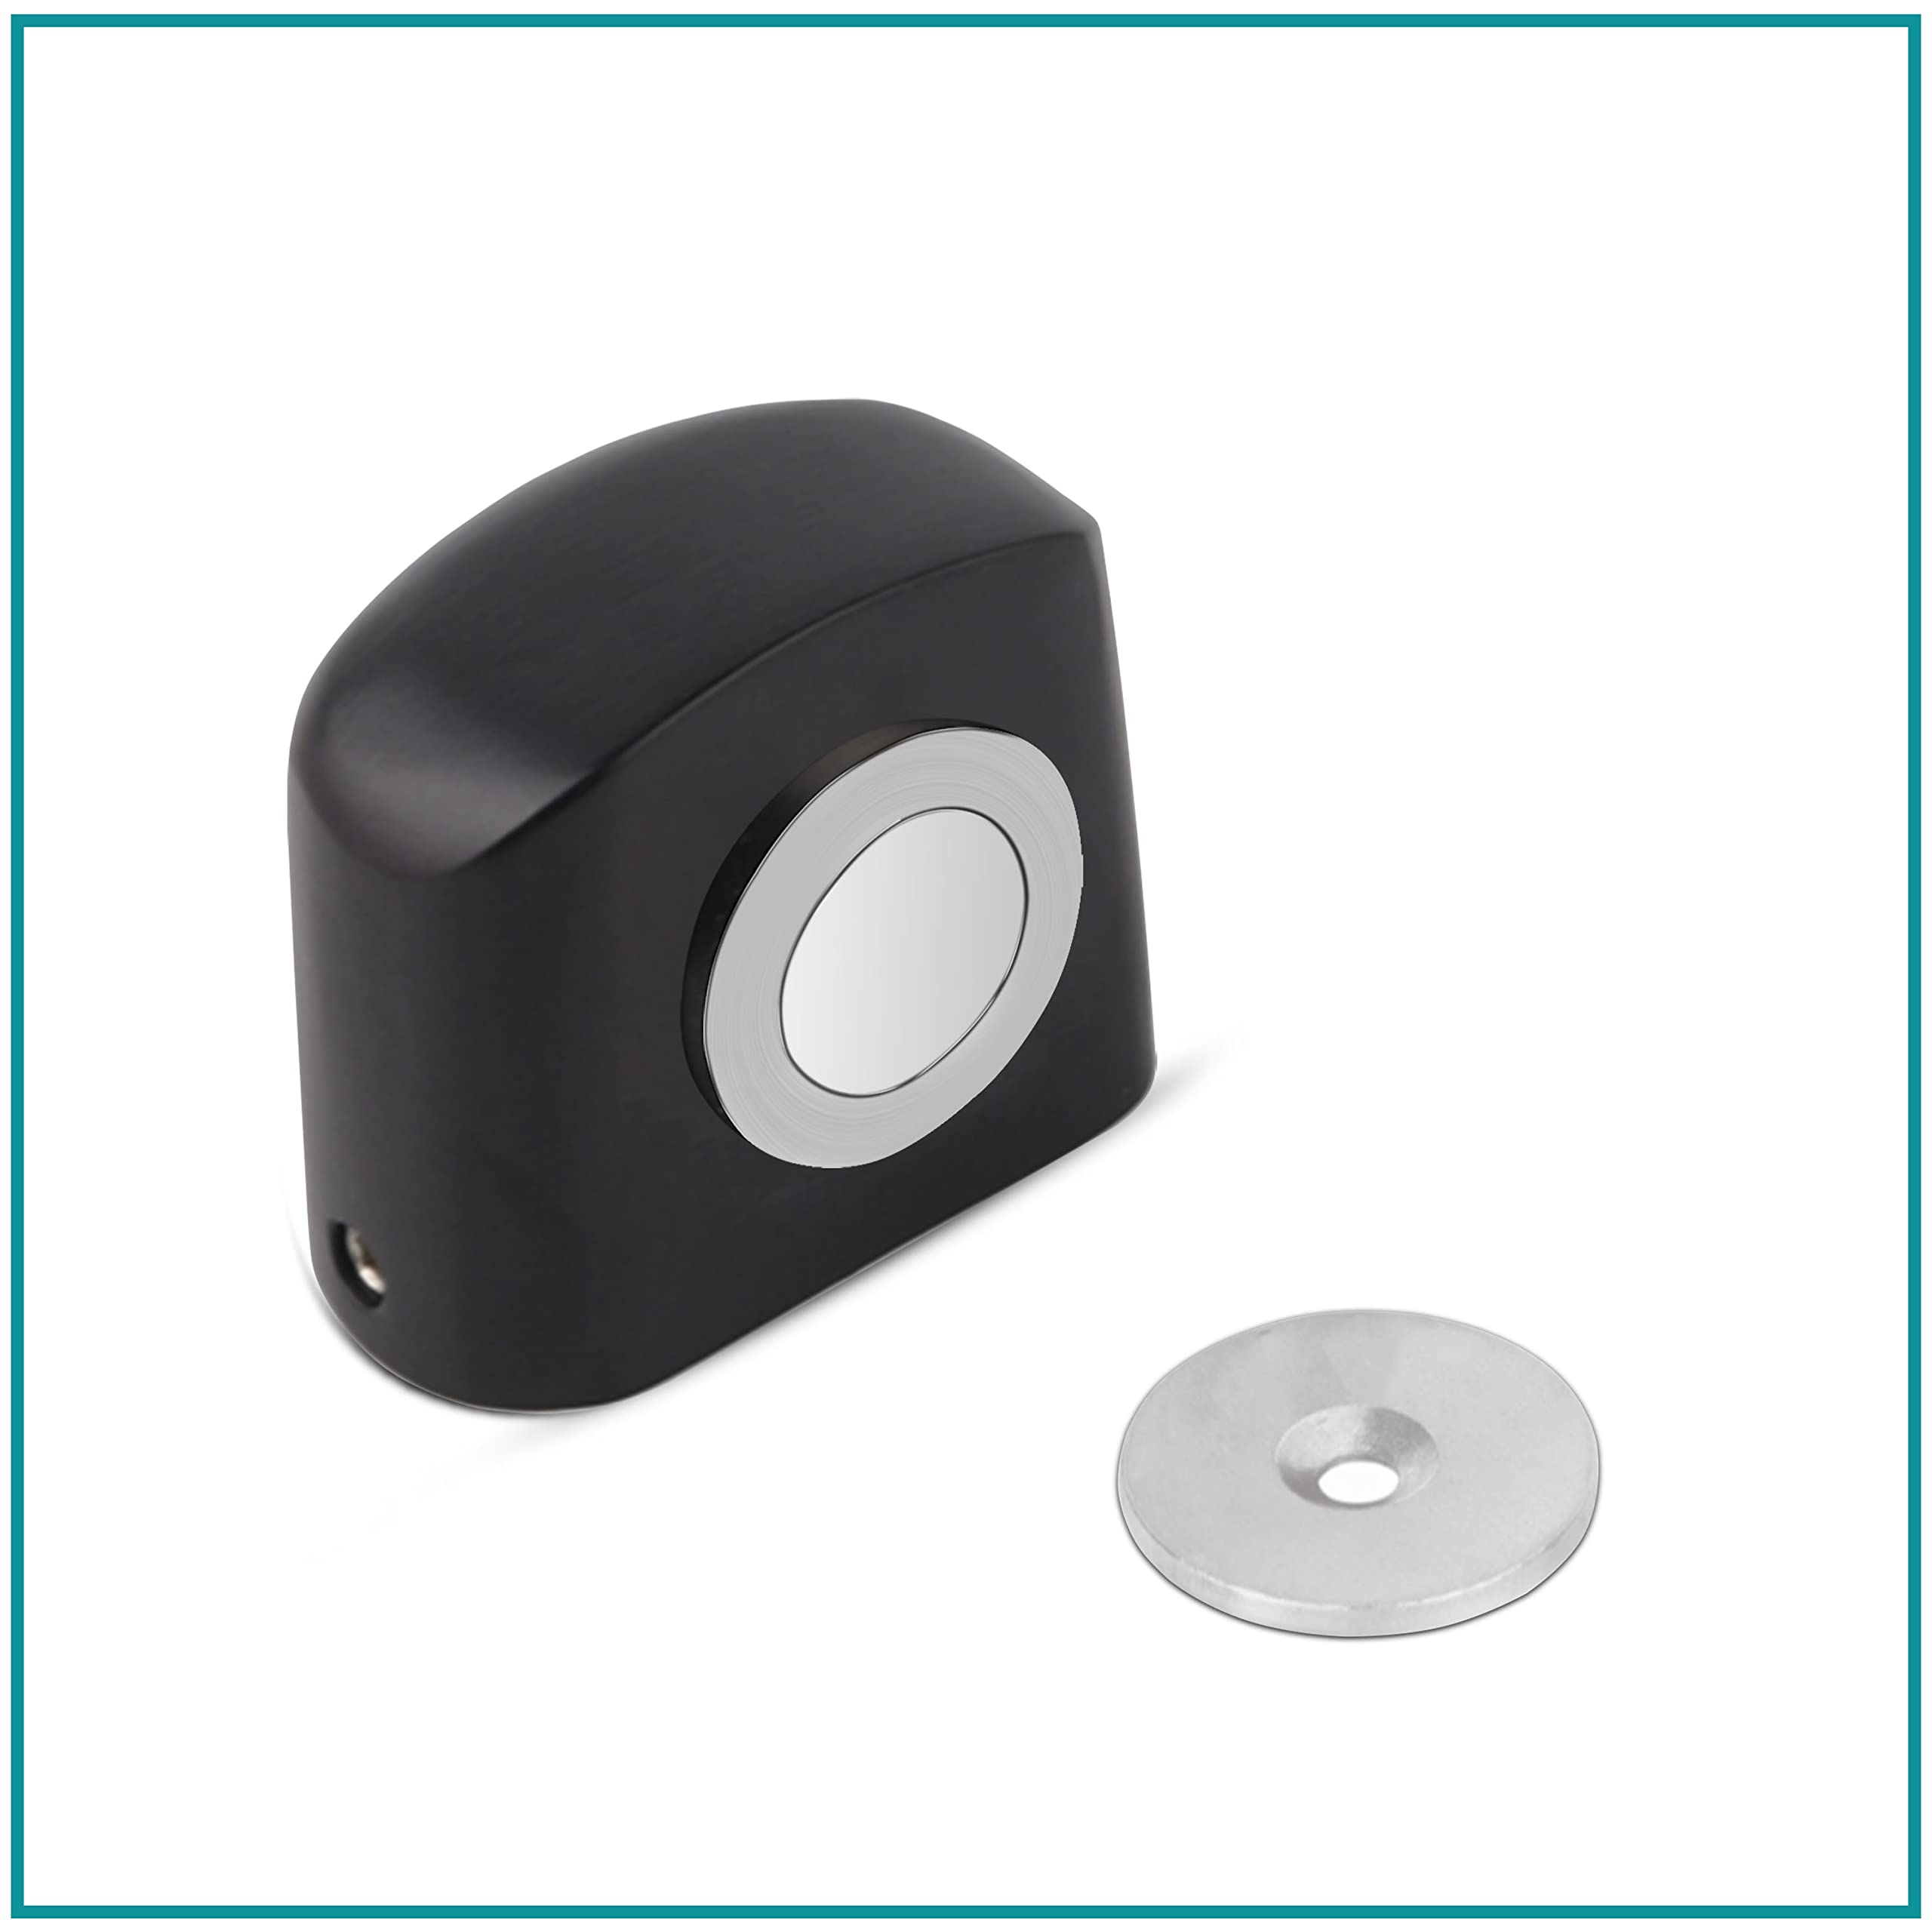 Plantex Heavy Duty Door Magnet Stopper/Door Catch Holder for Home/Office/Hotel, Floor Mounted Soft-Catcher to Hold Wooden/Glass/PVC Door - Pack of 8 (193 - Black)